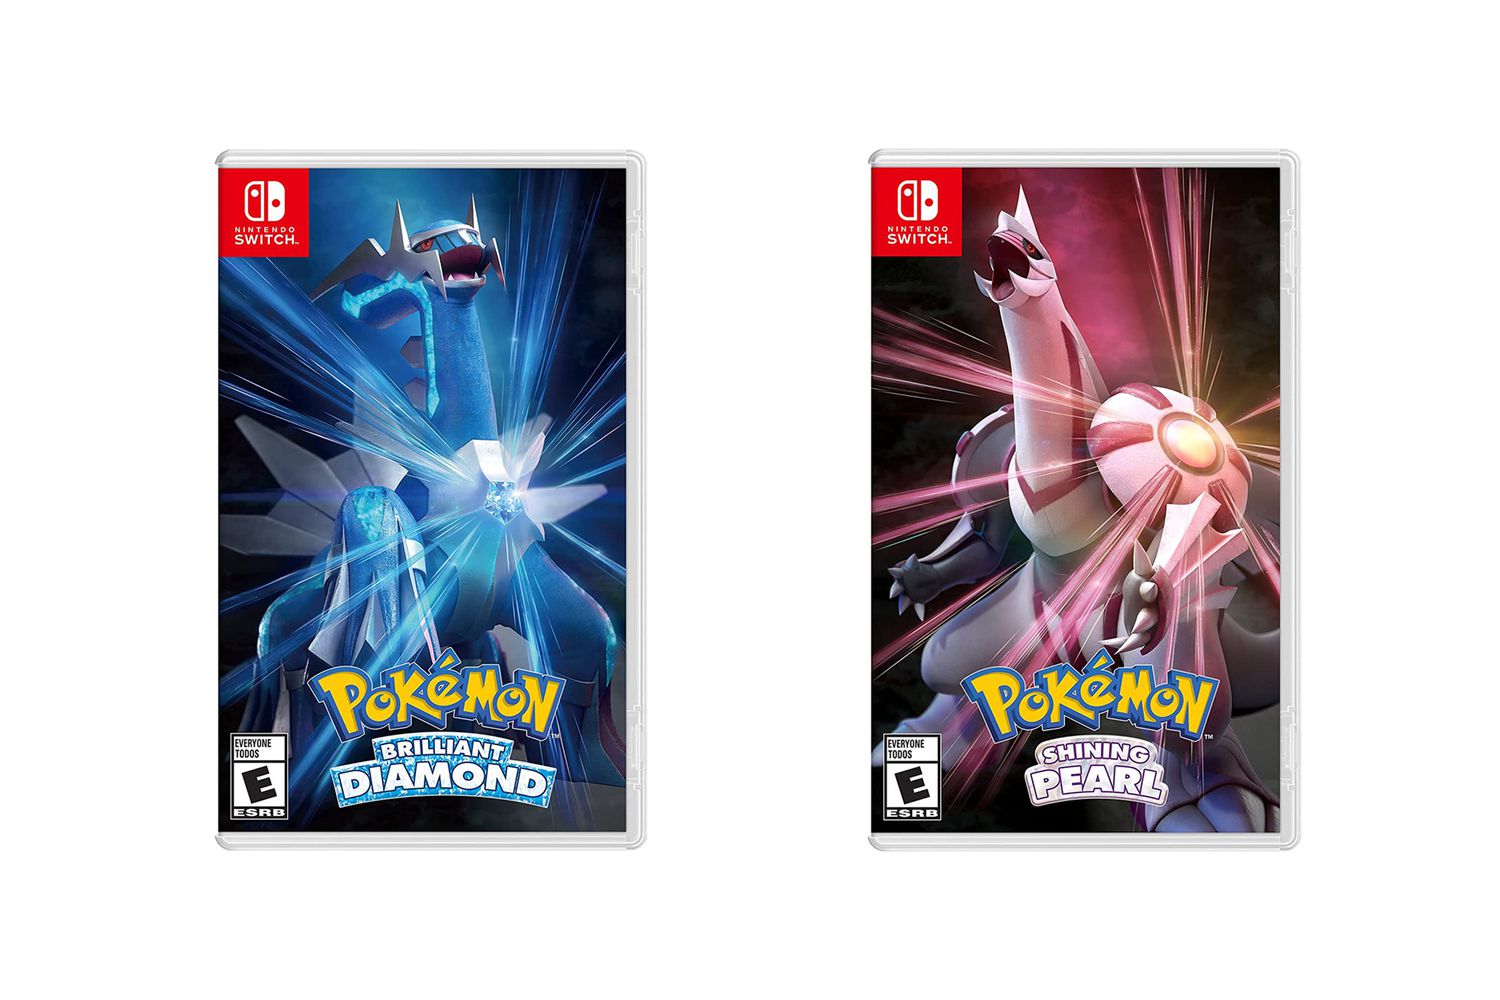 Diamond pokemon release date brilliant Pokemon Brilliant